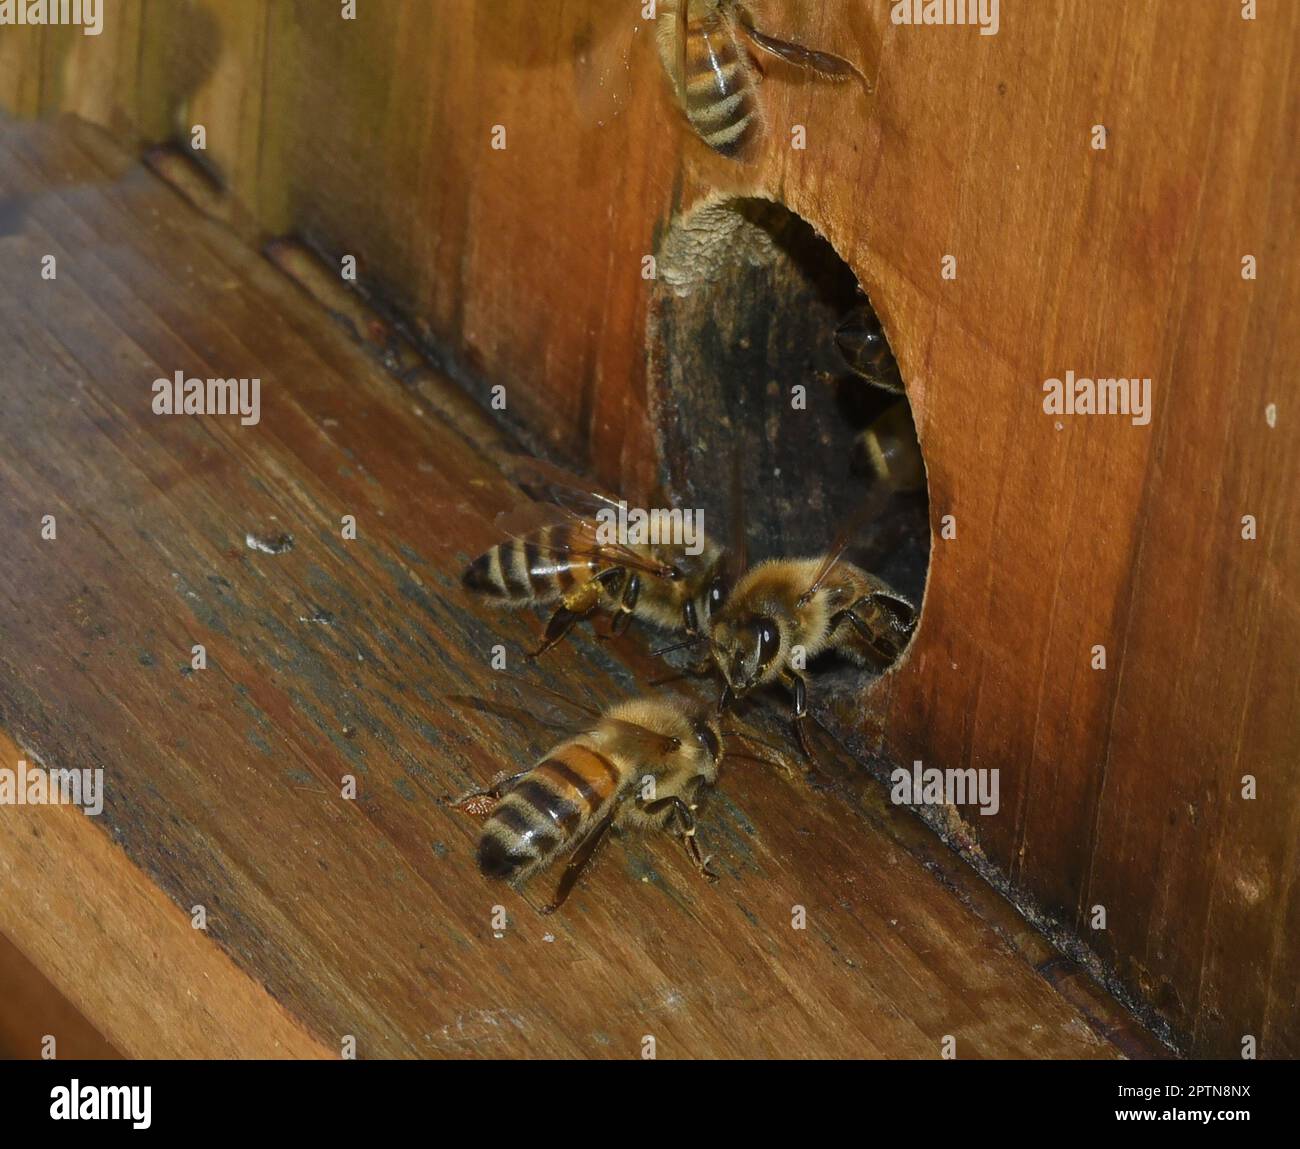 Biene, Apis mellifera, ist ein wichtiges Insekt zur Bestaeubung von Pflanzen und zum Sammeln von Honig. Honey bee, Apis mellifera, is an important ins Stock Photo